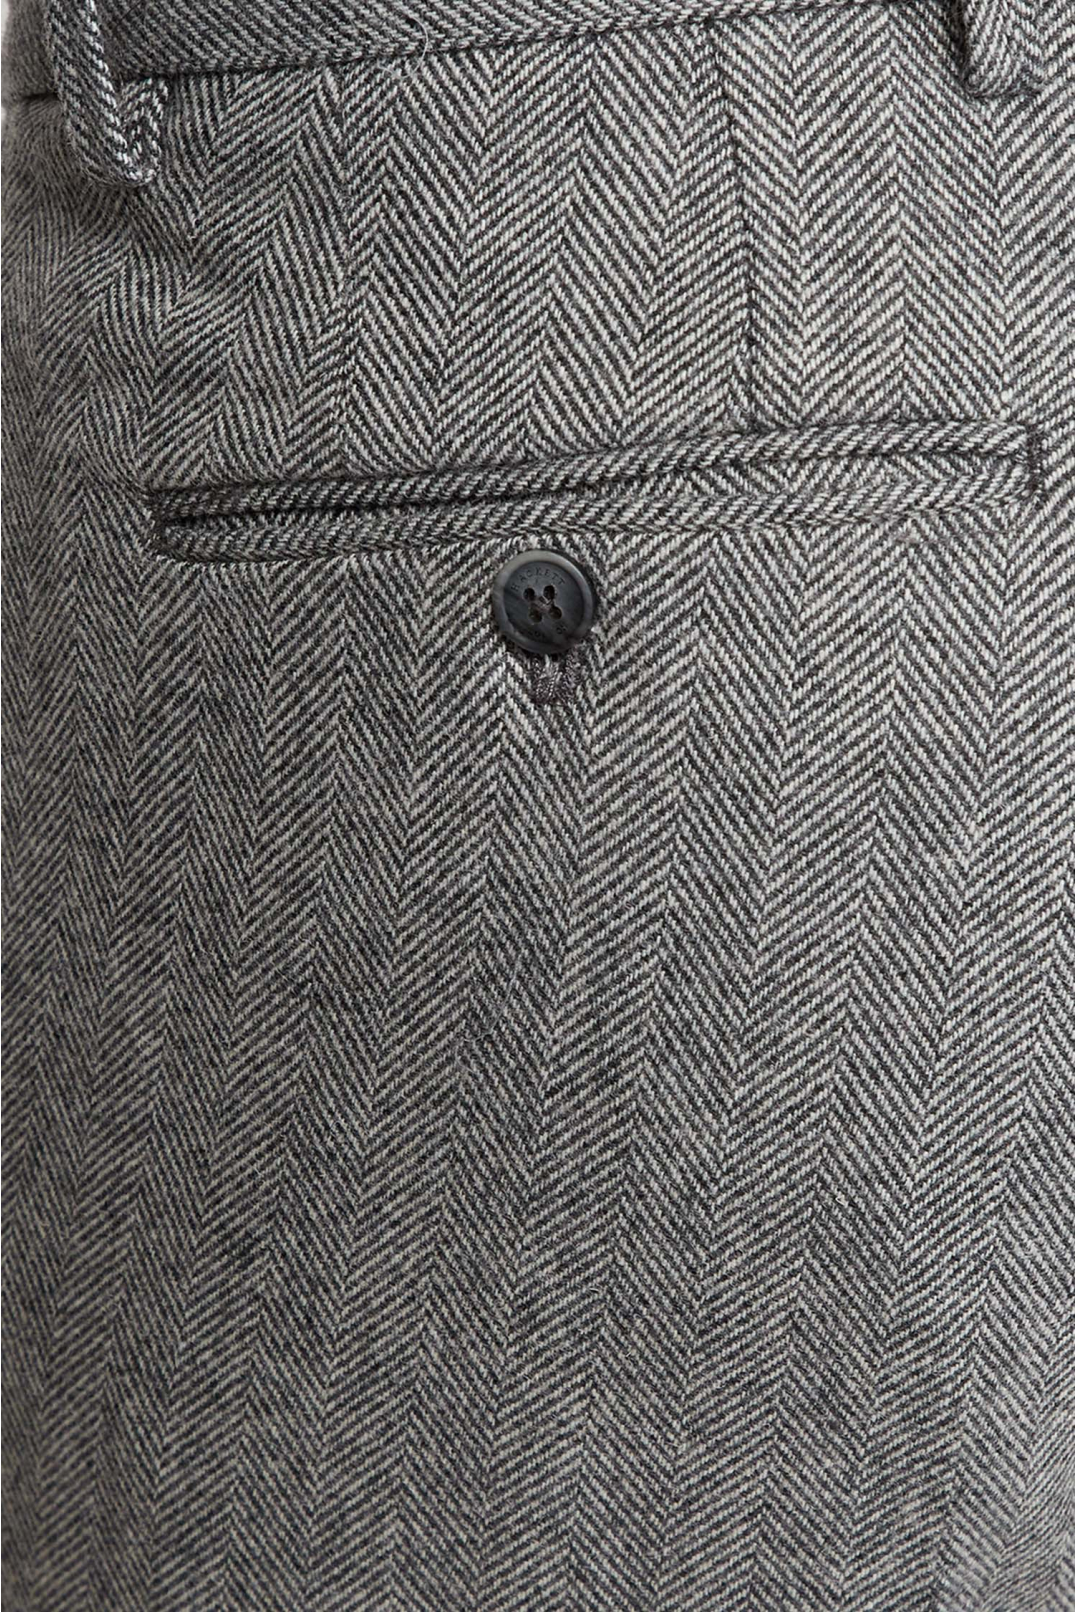 Мужские серые шерстяные брюки с узором - 4